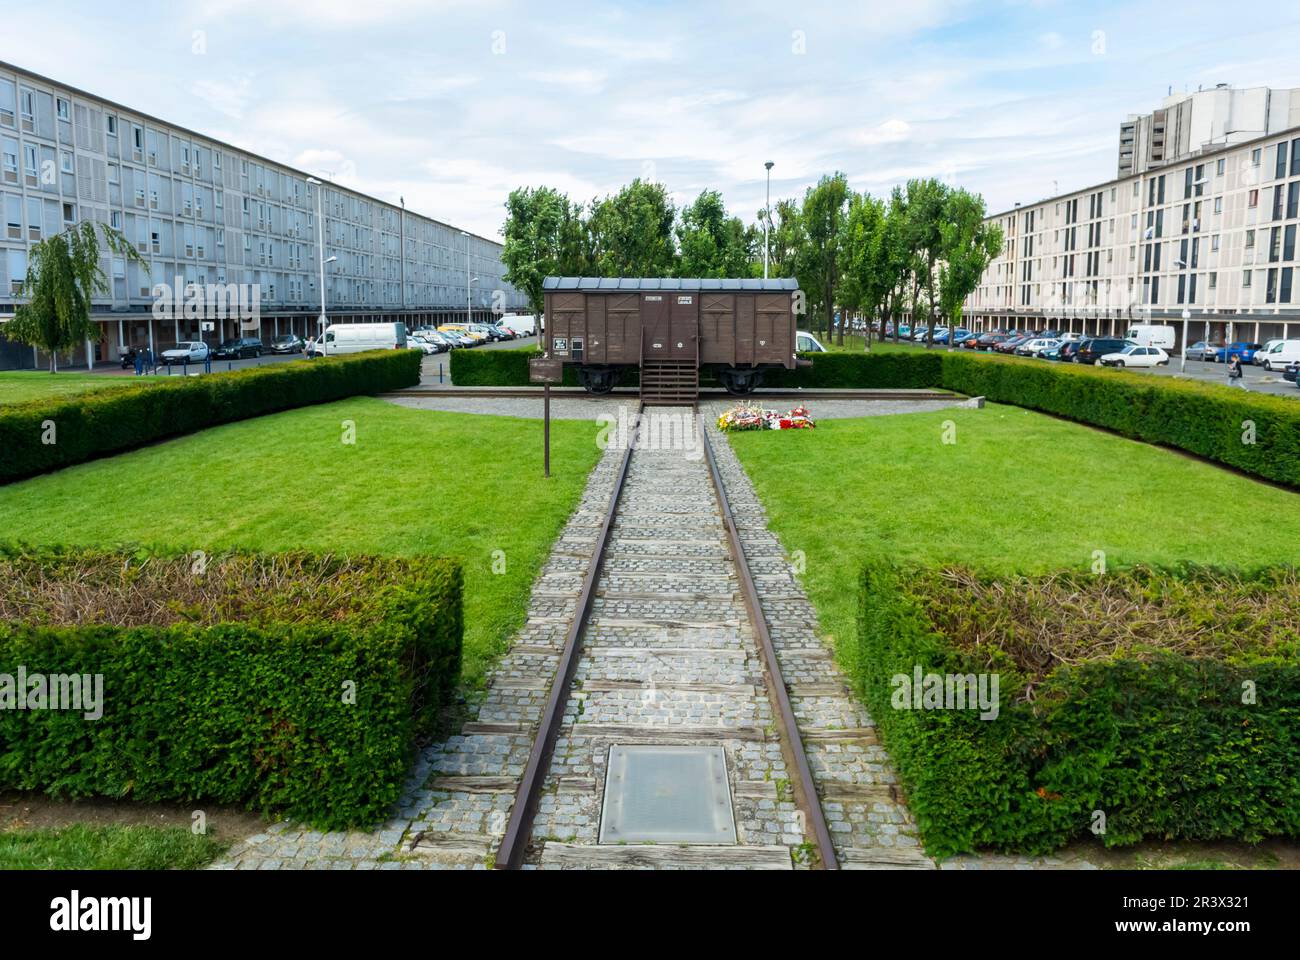 Box Car Train, il campo di internamento di Drancy è stato identificato dal sobborgo nord-orientale del Paris Holocaust Memorial Site, deportazione di Apartment Complex Foto Stock